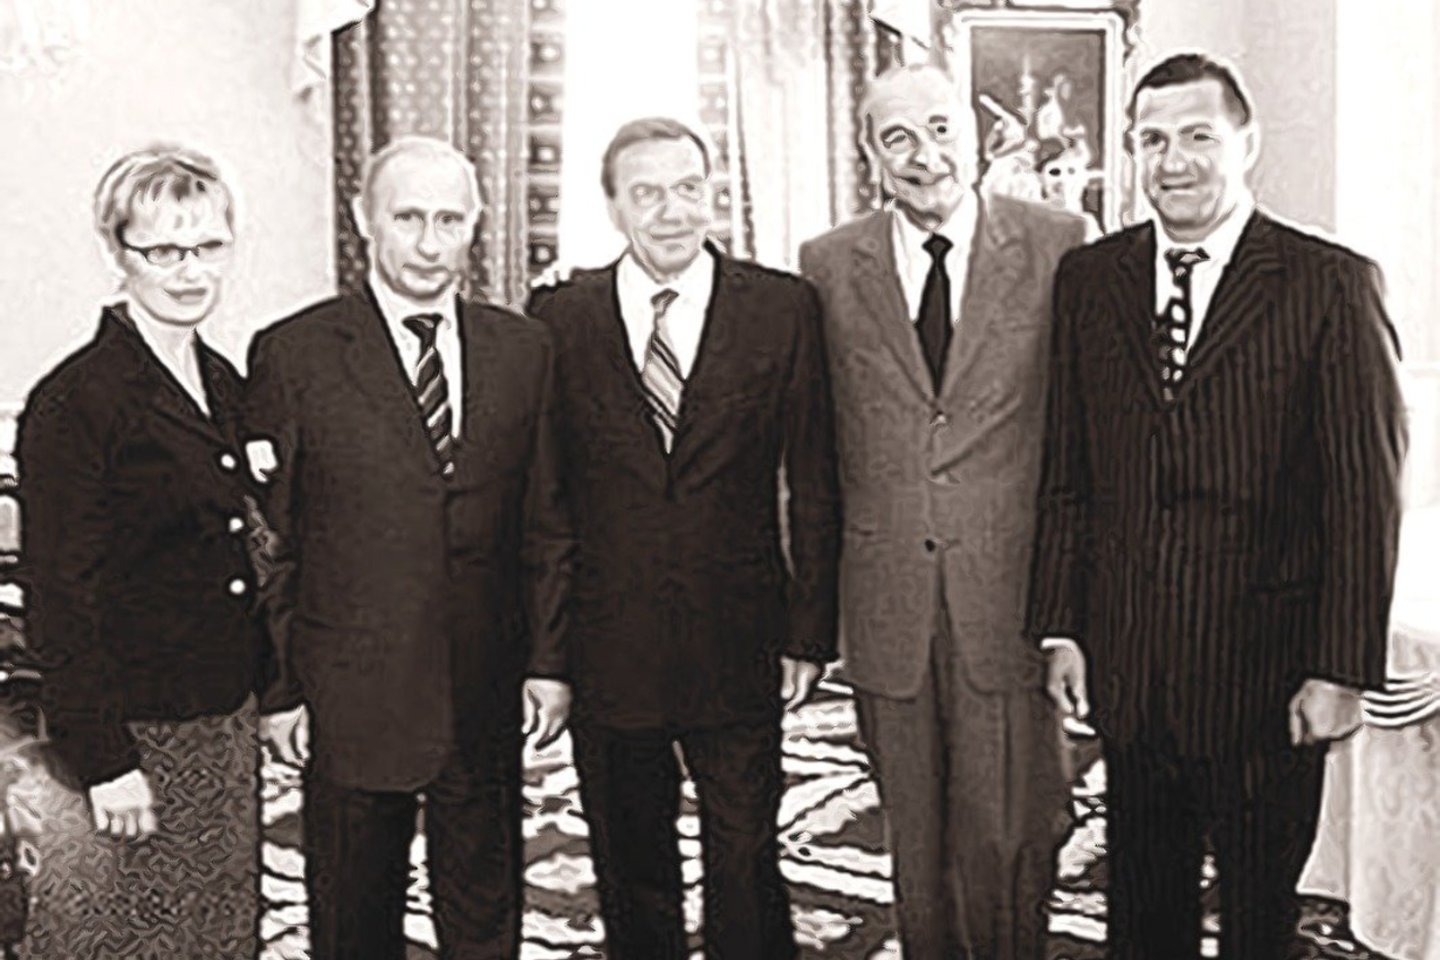 Nusikalstamo pasaulio veikėjas O.Škilis (dešinėje) savo viešbutyje Kaliningrade yra fotografavęsis kartu su (iš kairės) Rusijos vadovu V.Putinu, Vokietijos kancleriu G.Schröderiu ir Prancūzijos prezidentu J.Chiracu.